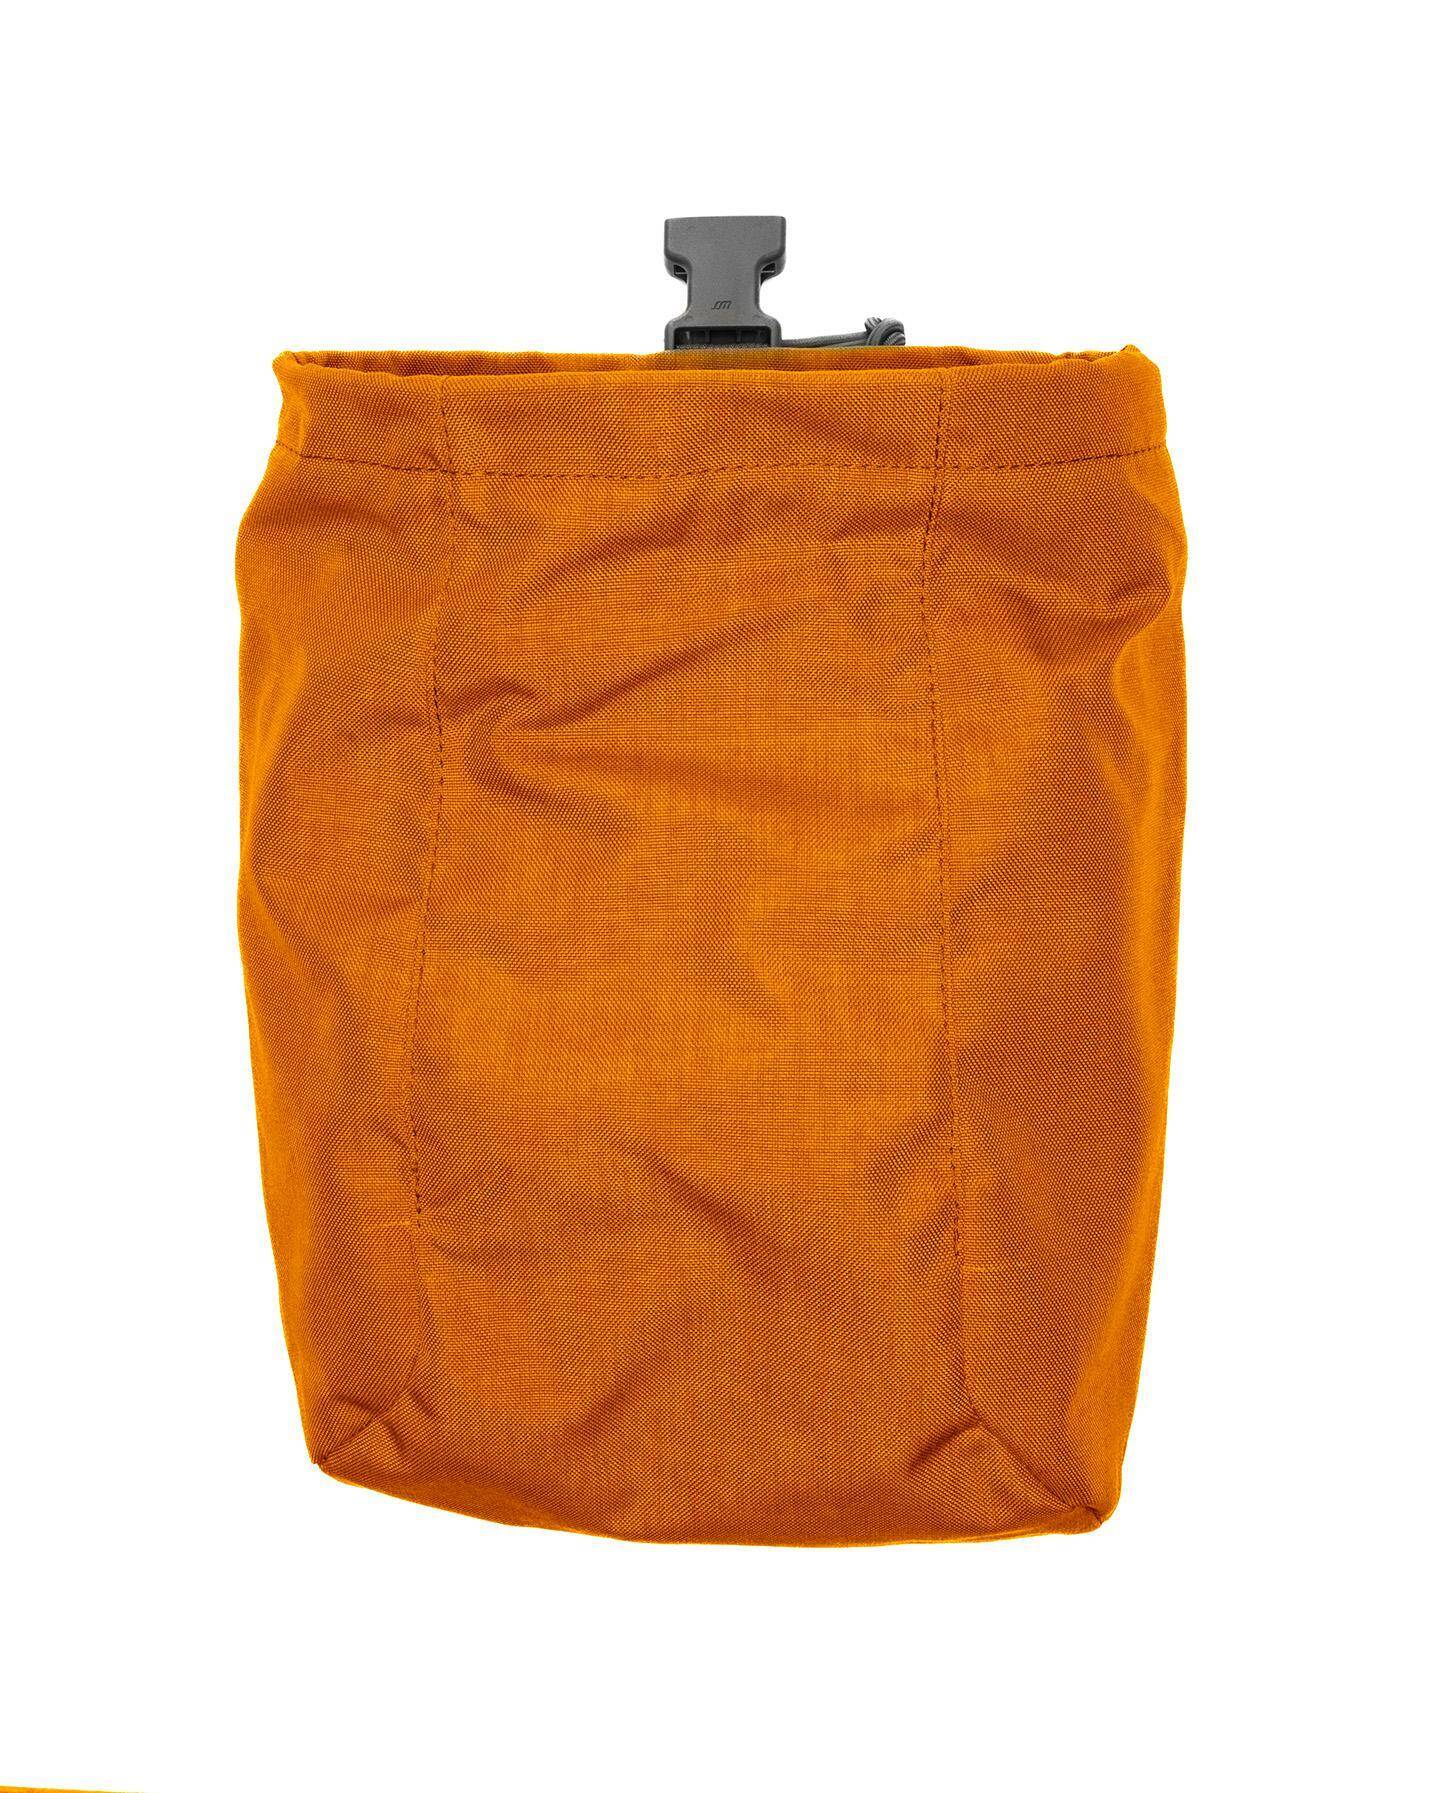 Dump Bag CAPAX Orange (Photo 1)